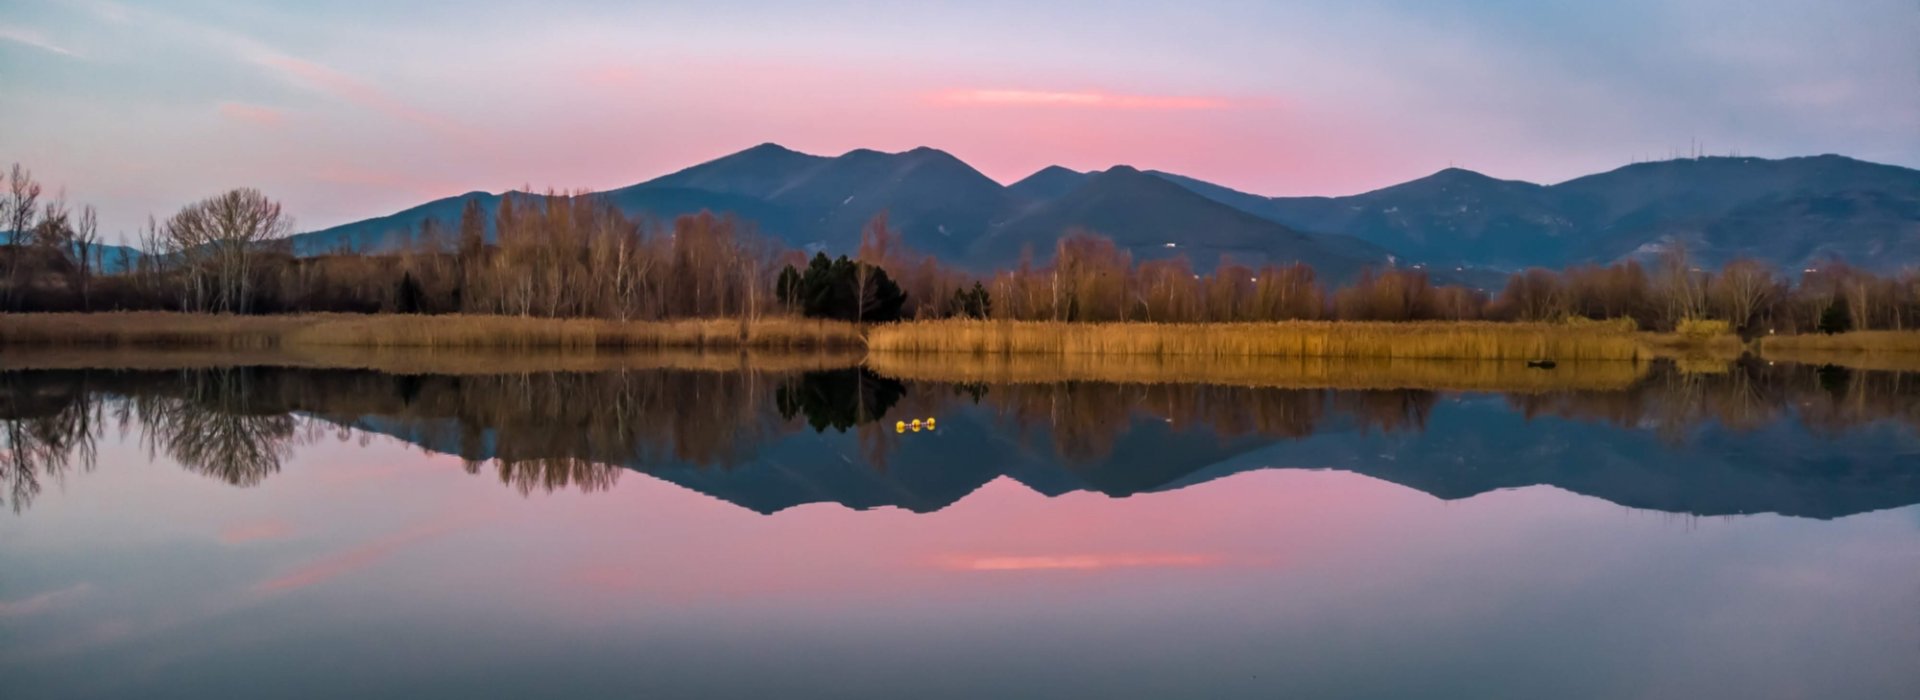 Monte Pisano Lago riflesso al tramonto